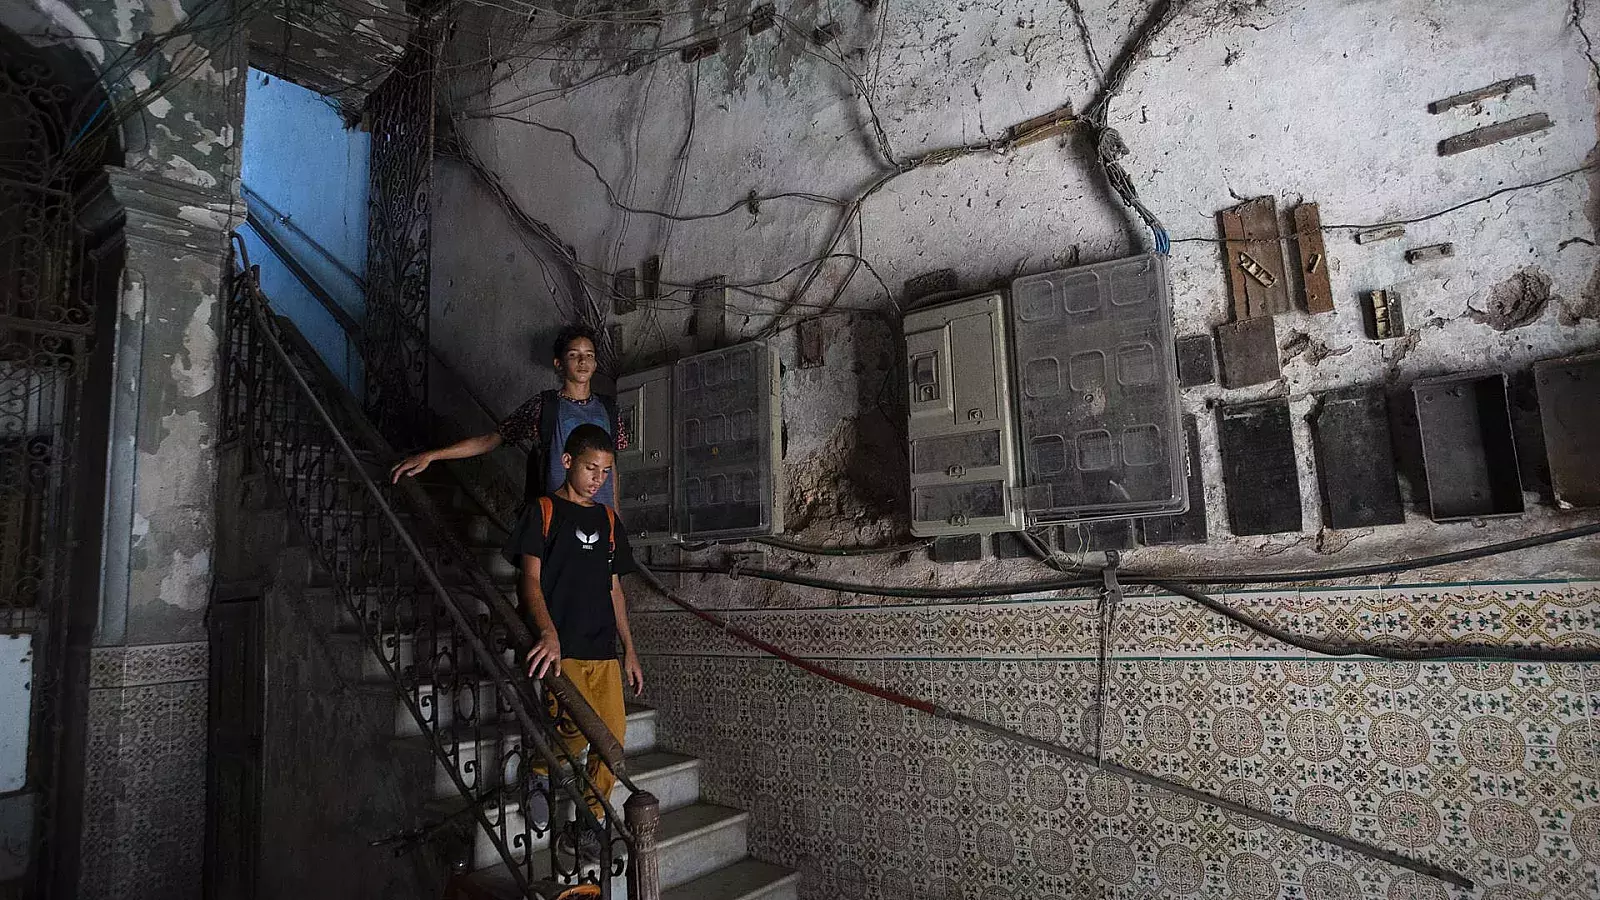 Dos personas pasan frente a varios contadores de corriente instalados en la pared de un edificio en La Habana